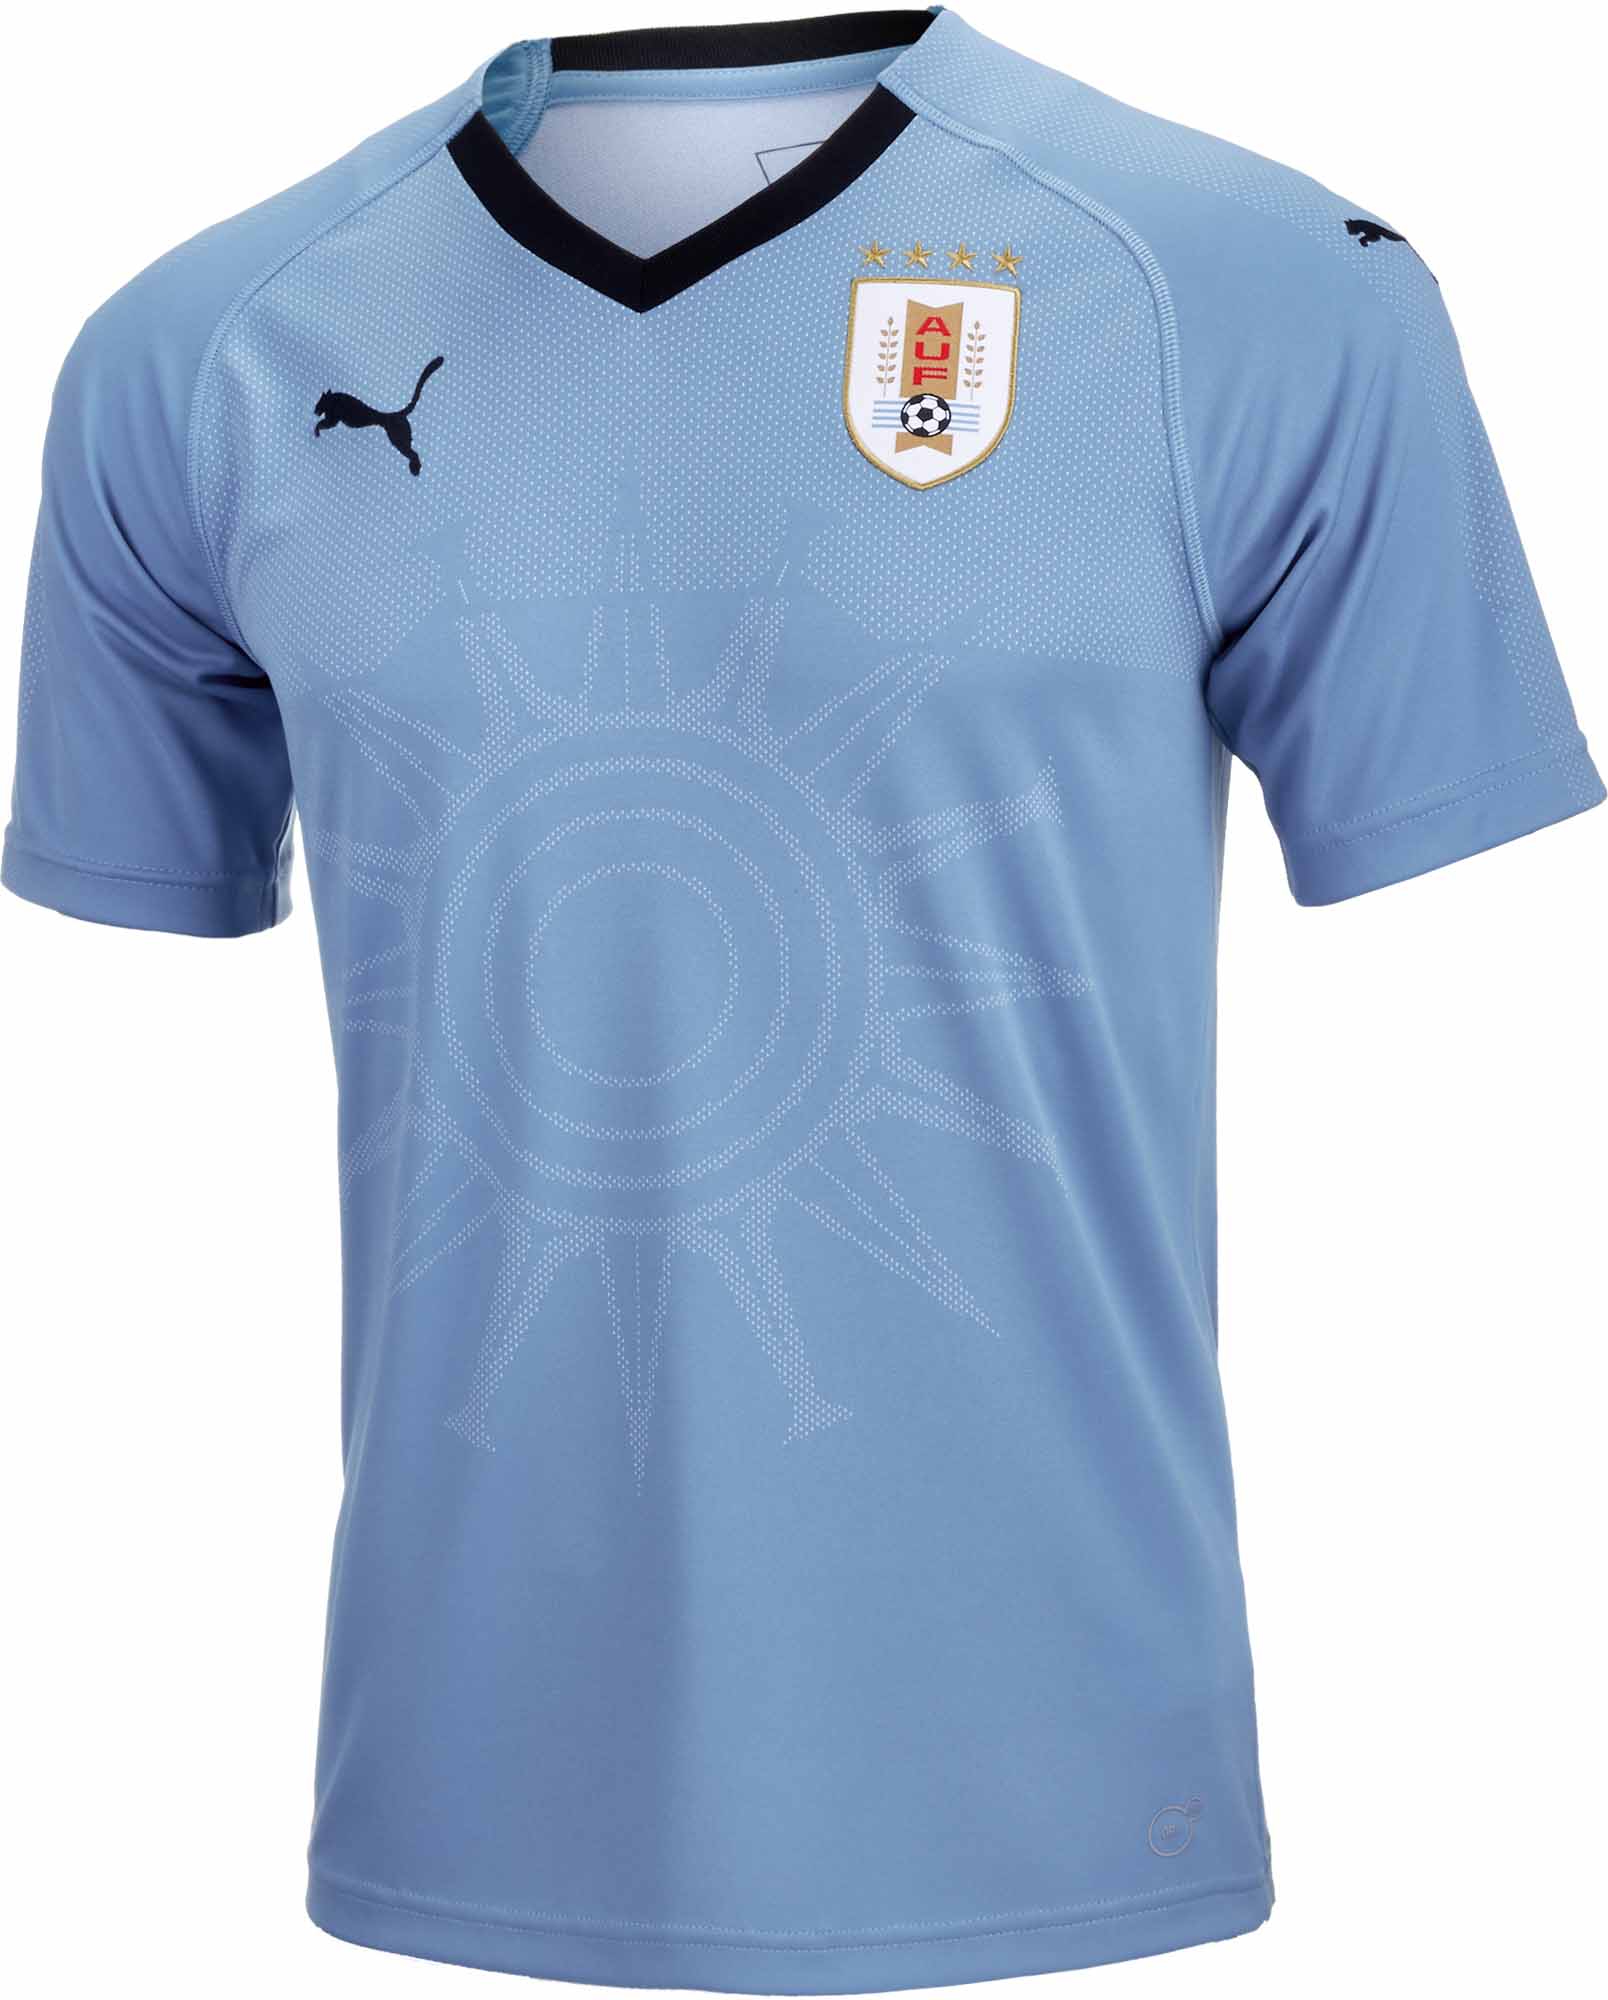 puma uruguay jersey